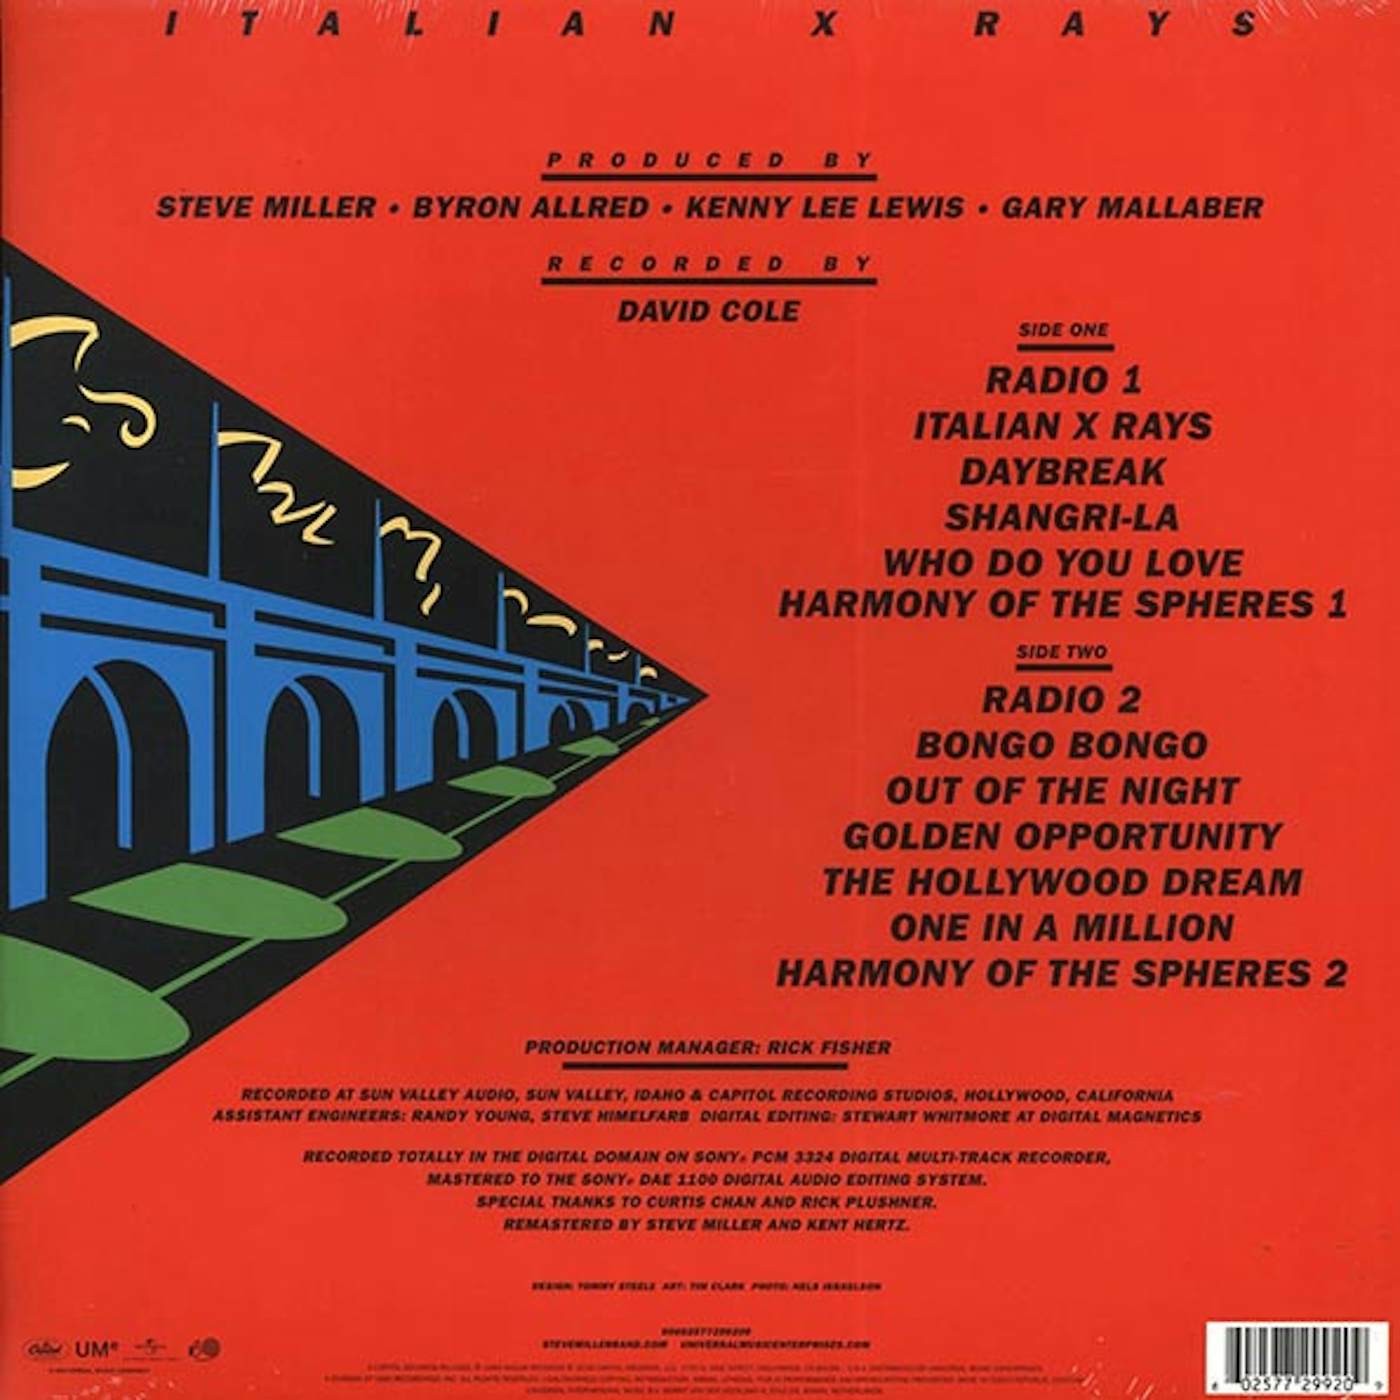 Steve Miller Band  LP -  Italian X Rays (incl. mp3) (180g) (Vinyl)